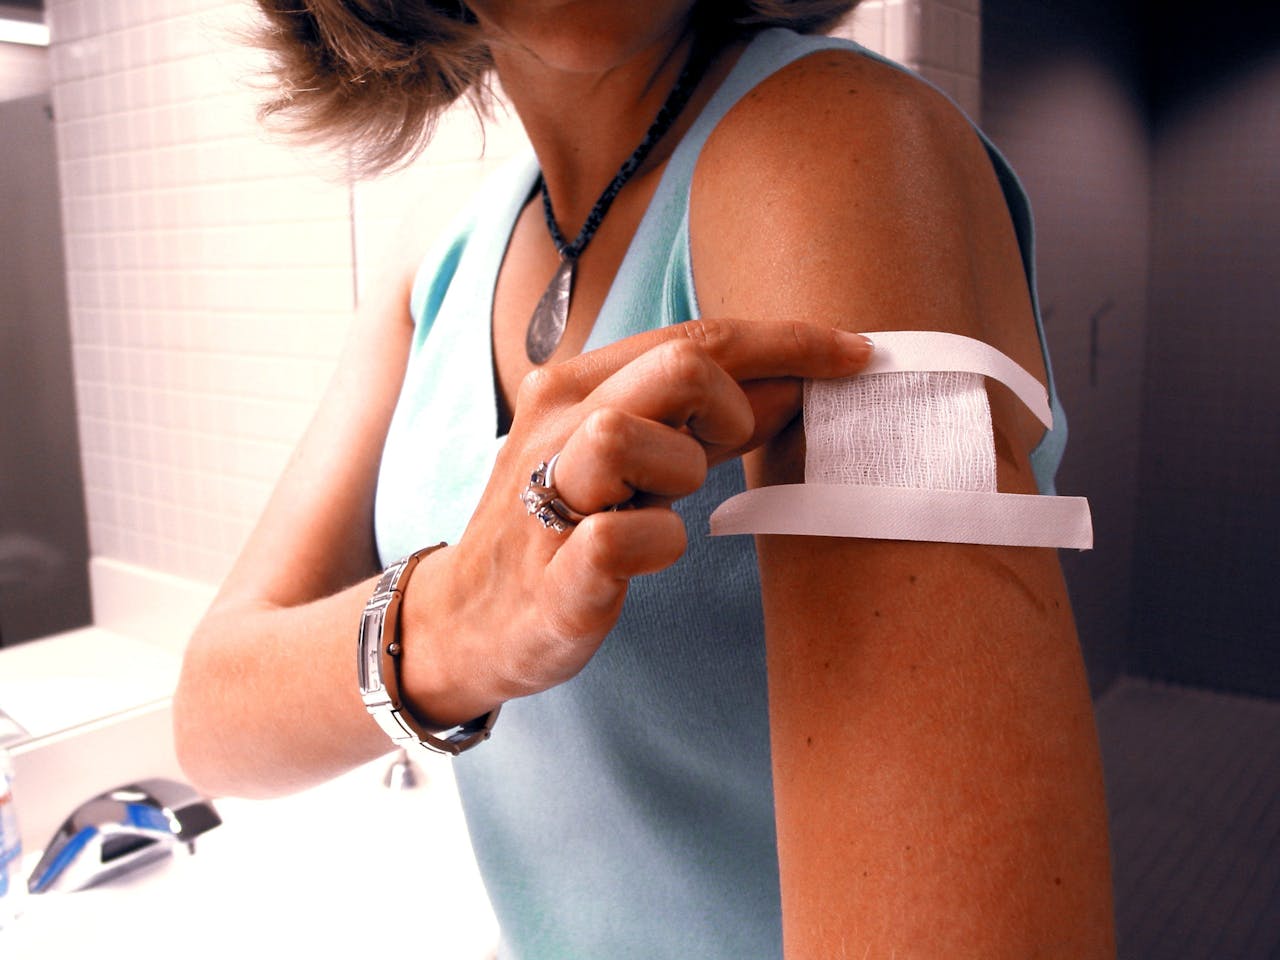 Een vrouw met een pleister op haar bovenarm. Ze heeft net een vaccinatie gehad.